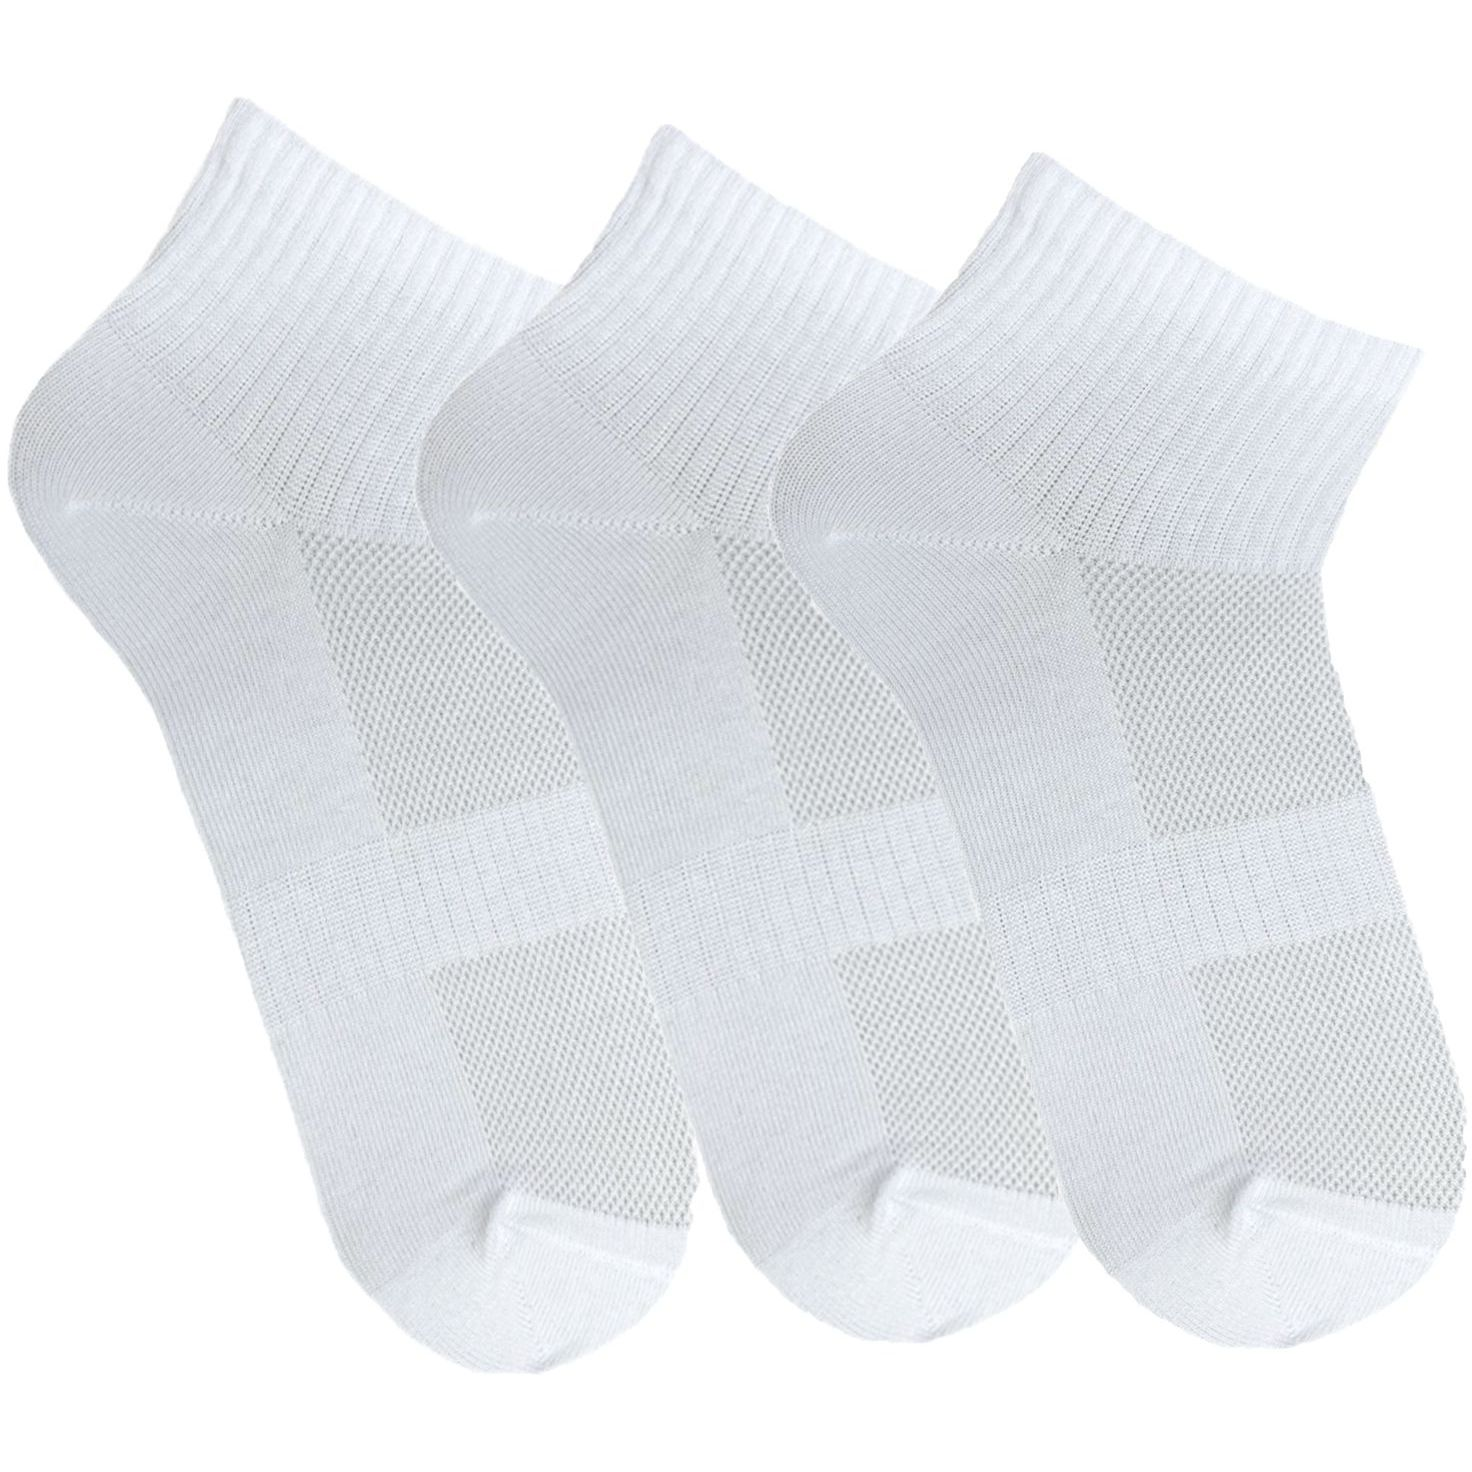 Набор носков женских Premier Socks 36-40 3 пары белые (4820163319223) фото 